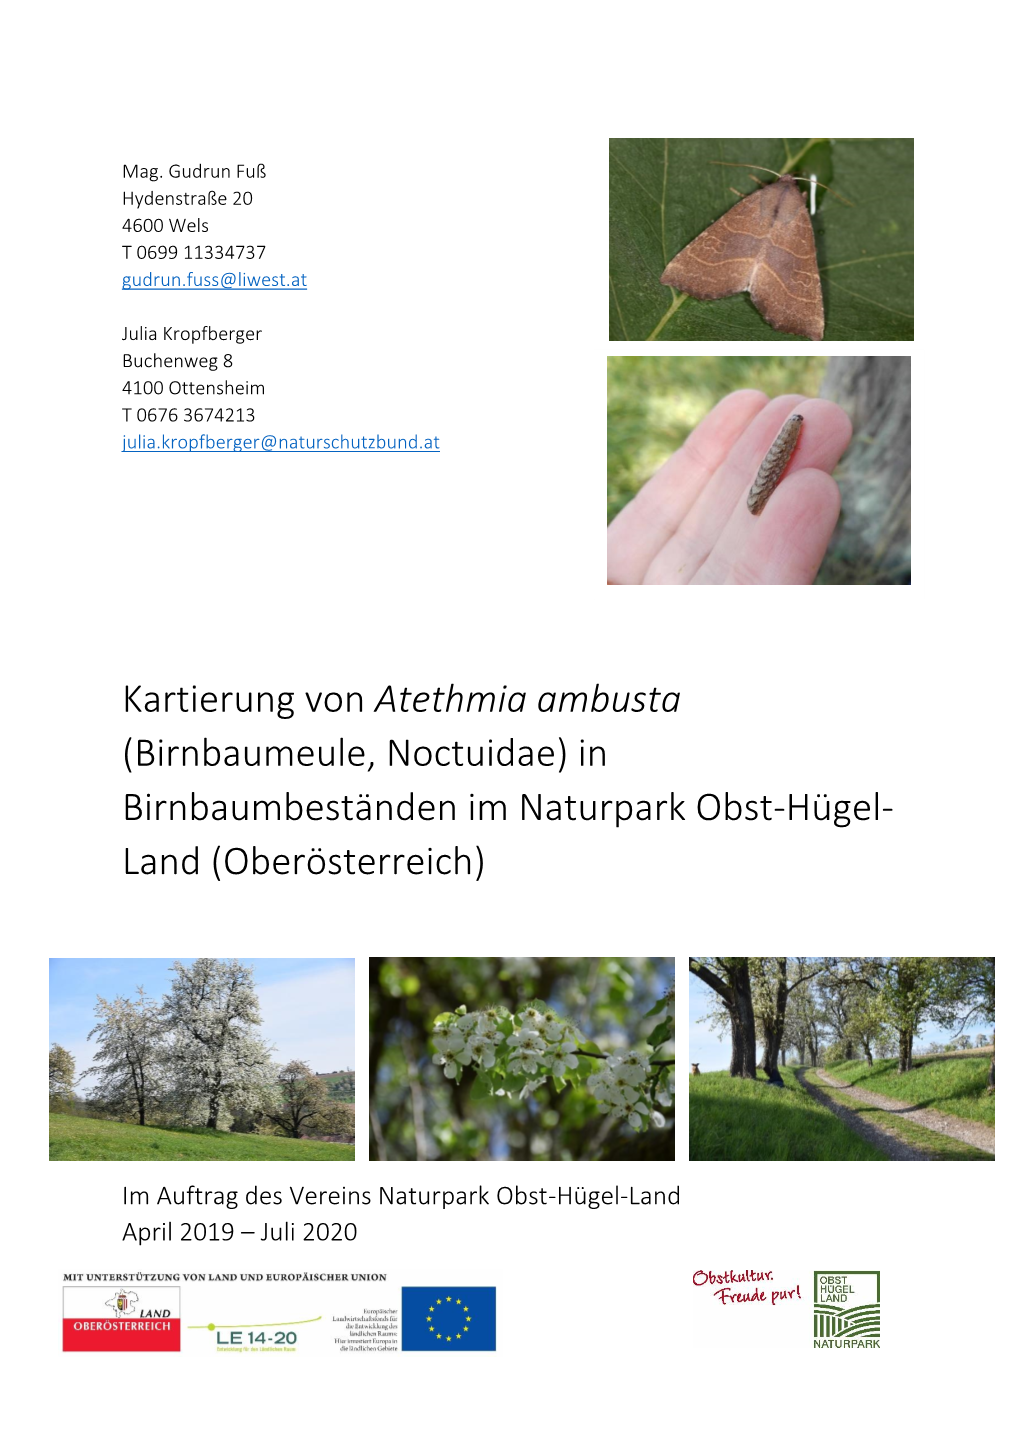 Atethmia Ambusta (Birnbaumeule, Noctuidae) in Birnbaumbeständen Im Naturpark Obst-Hügel- Land (Oberösterreich)